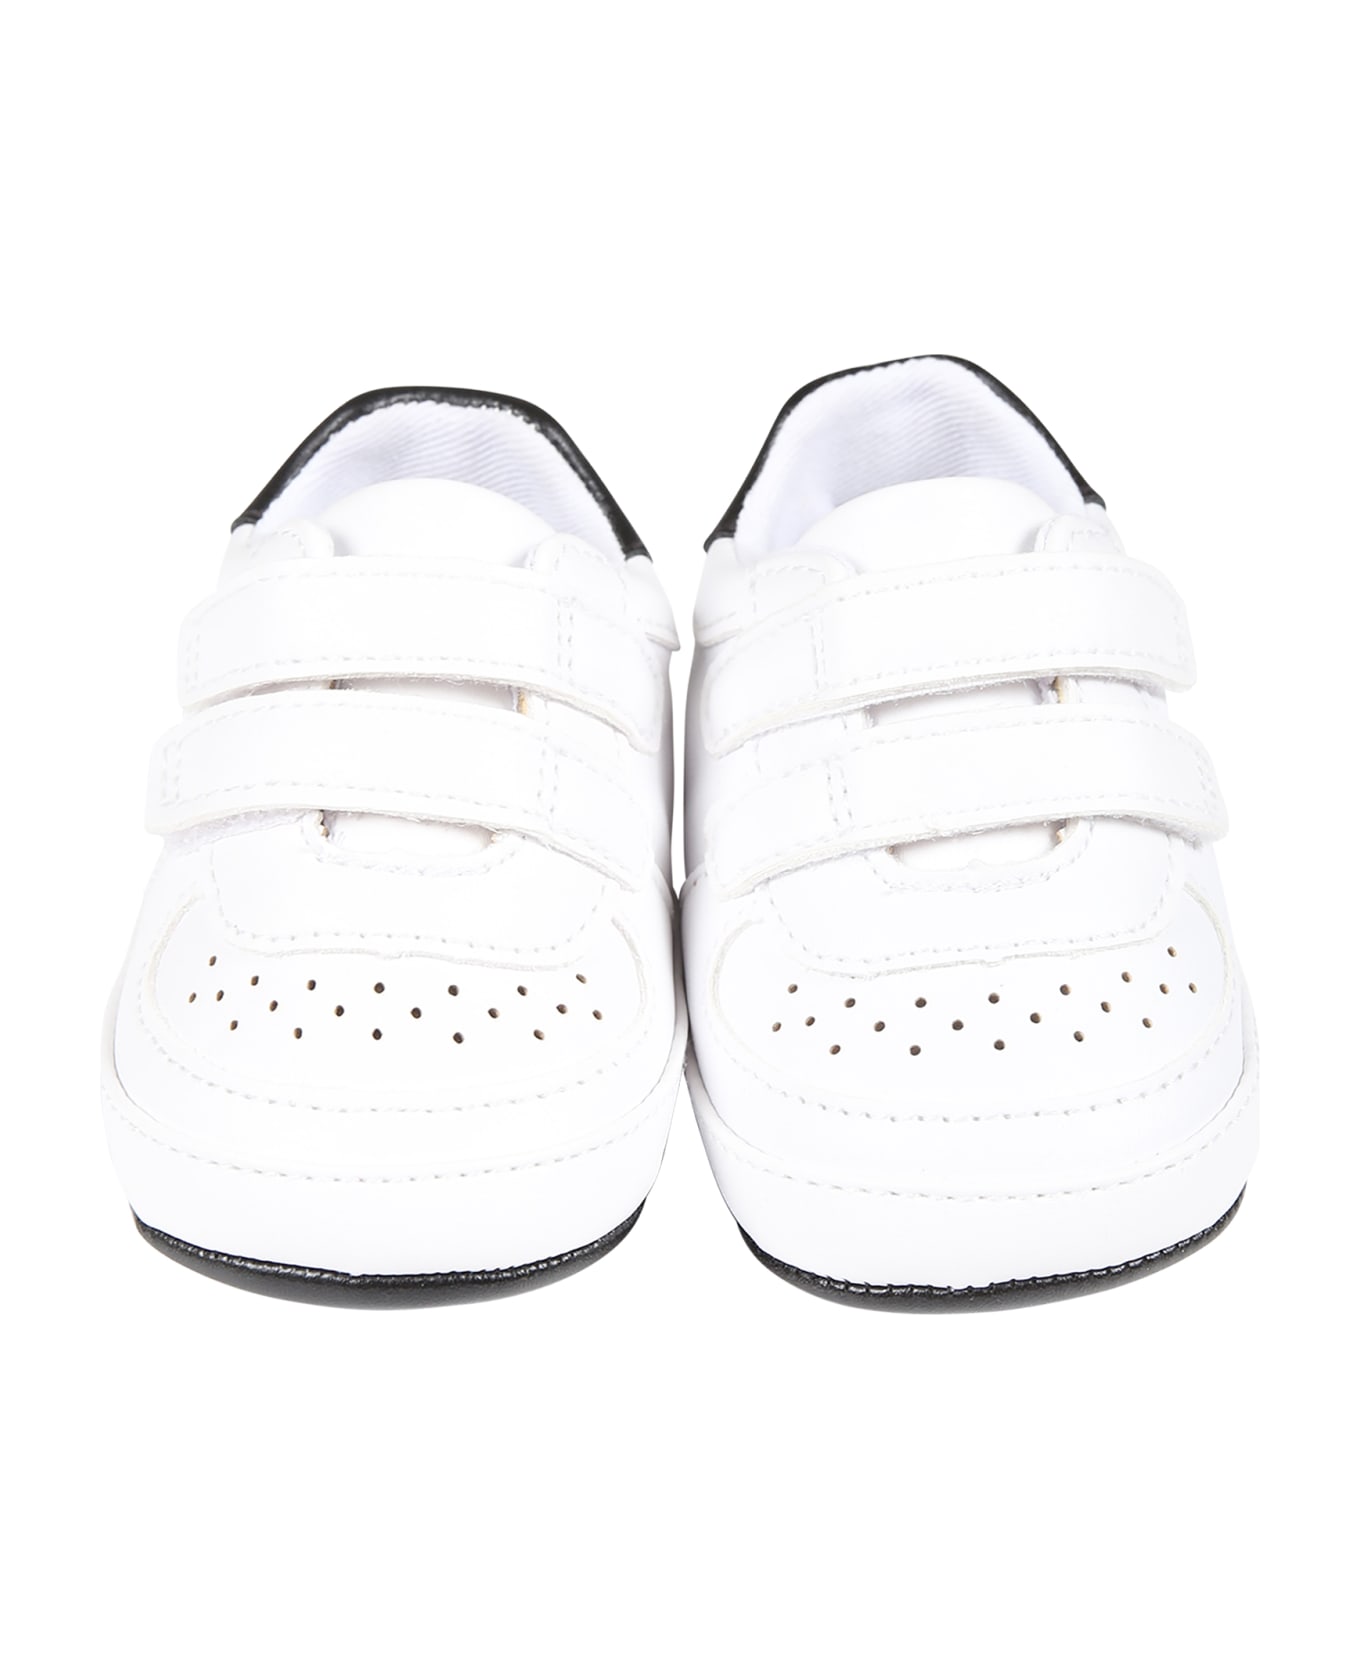 Calvin Klein White Sneakers For Baby Boy With Logo - White シューズ